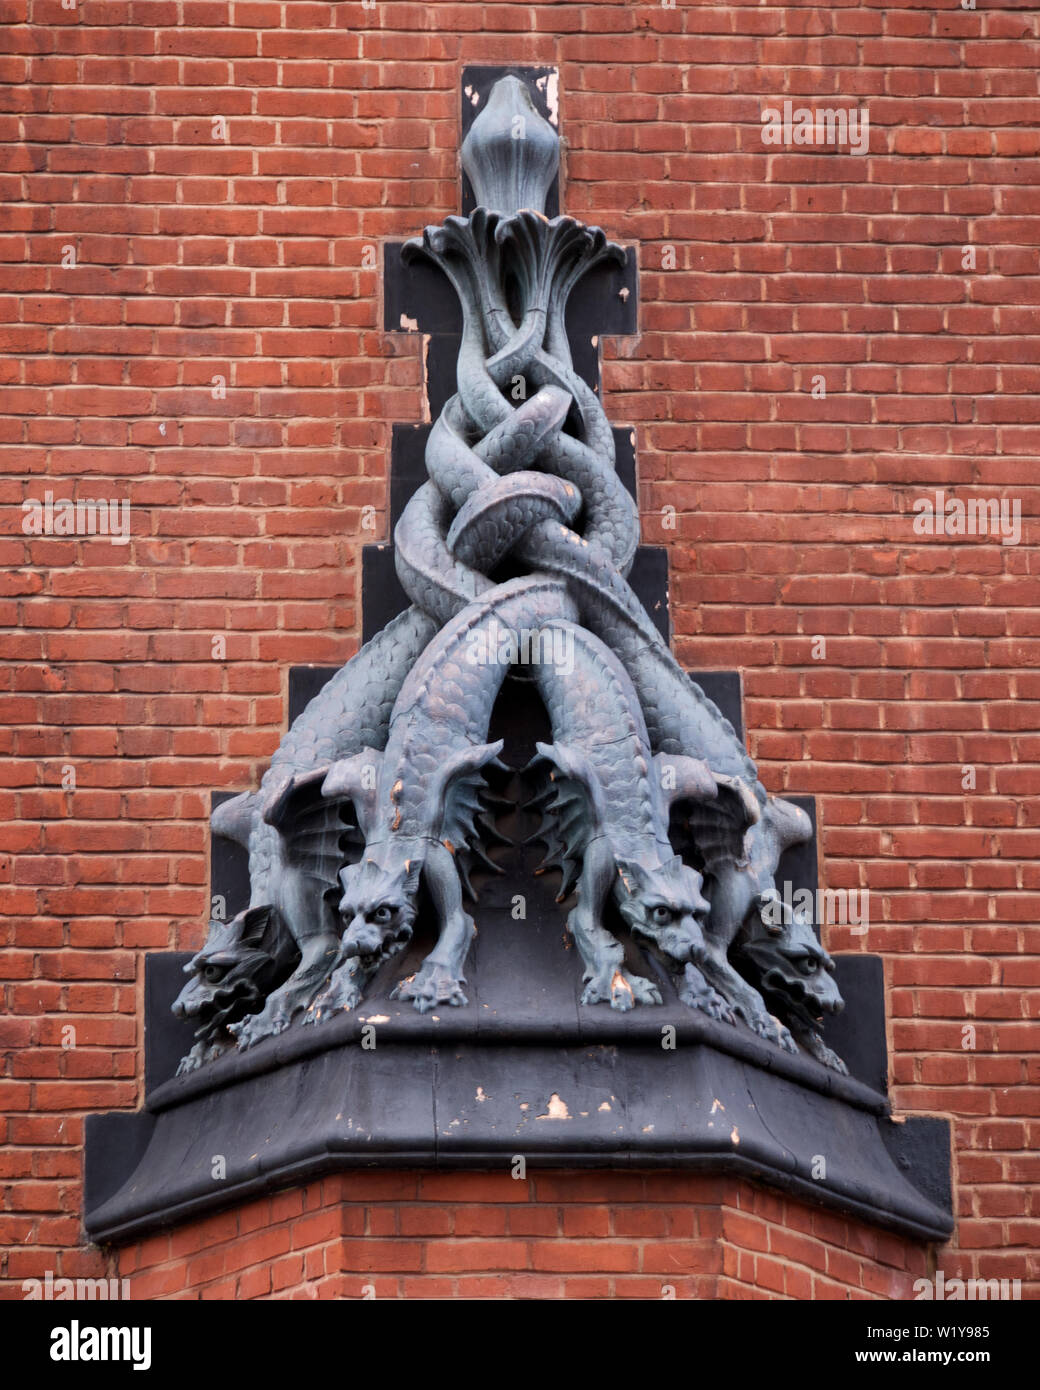 Sculpture de multi-mythique créature dirigée à Kensington, London Banque D'Images